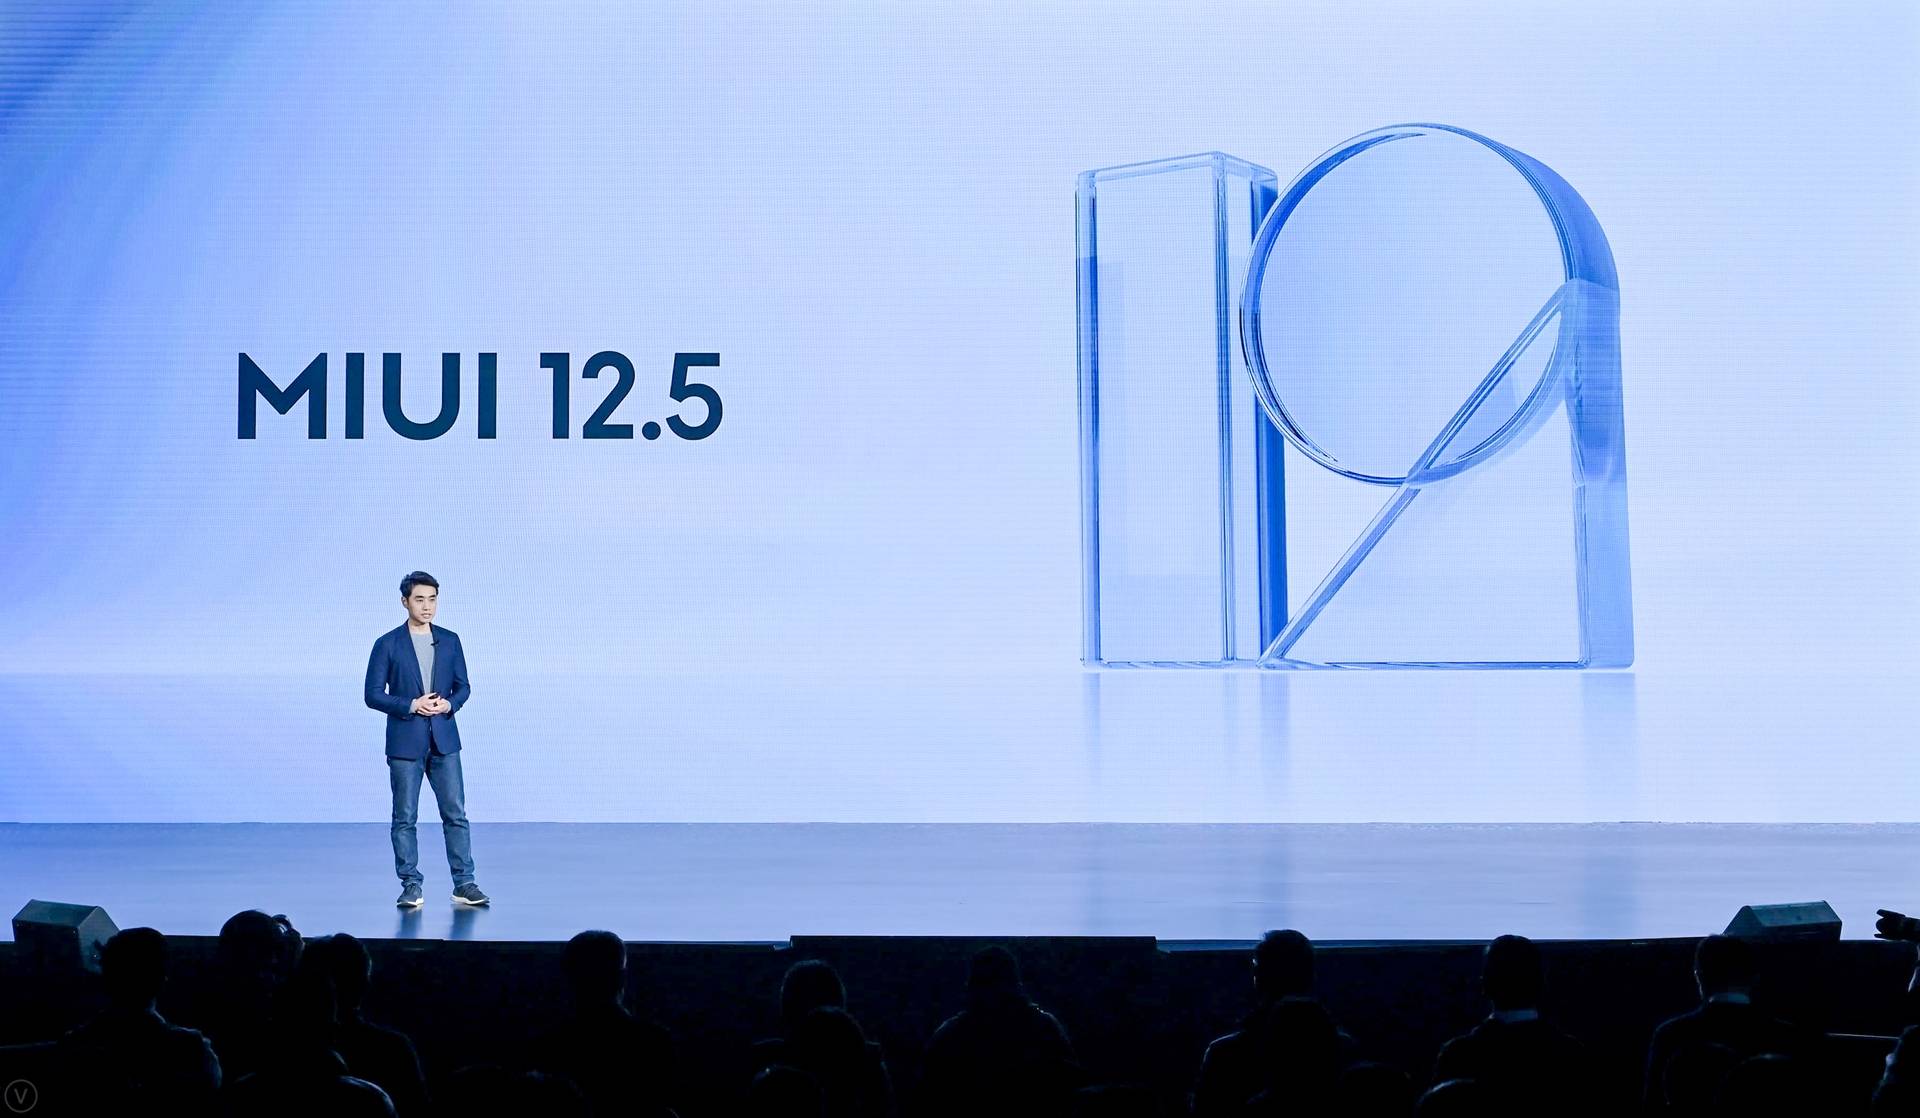 881609156252 .pic hd - Conferenza Xiaomi Mi 11: Mi 11 offre le prestazioni più forti e lo schermo migliore, MIUI 12.5 è il corpo completo